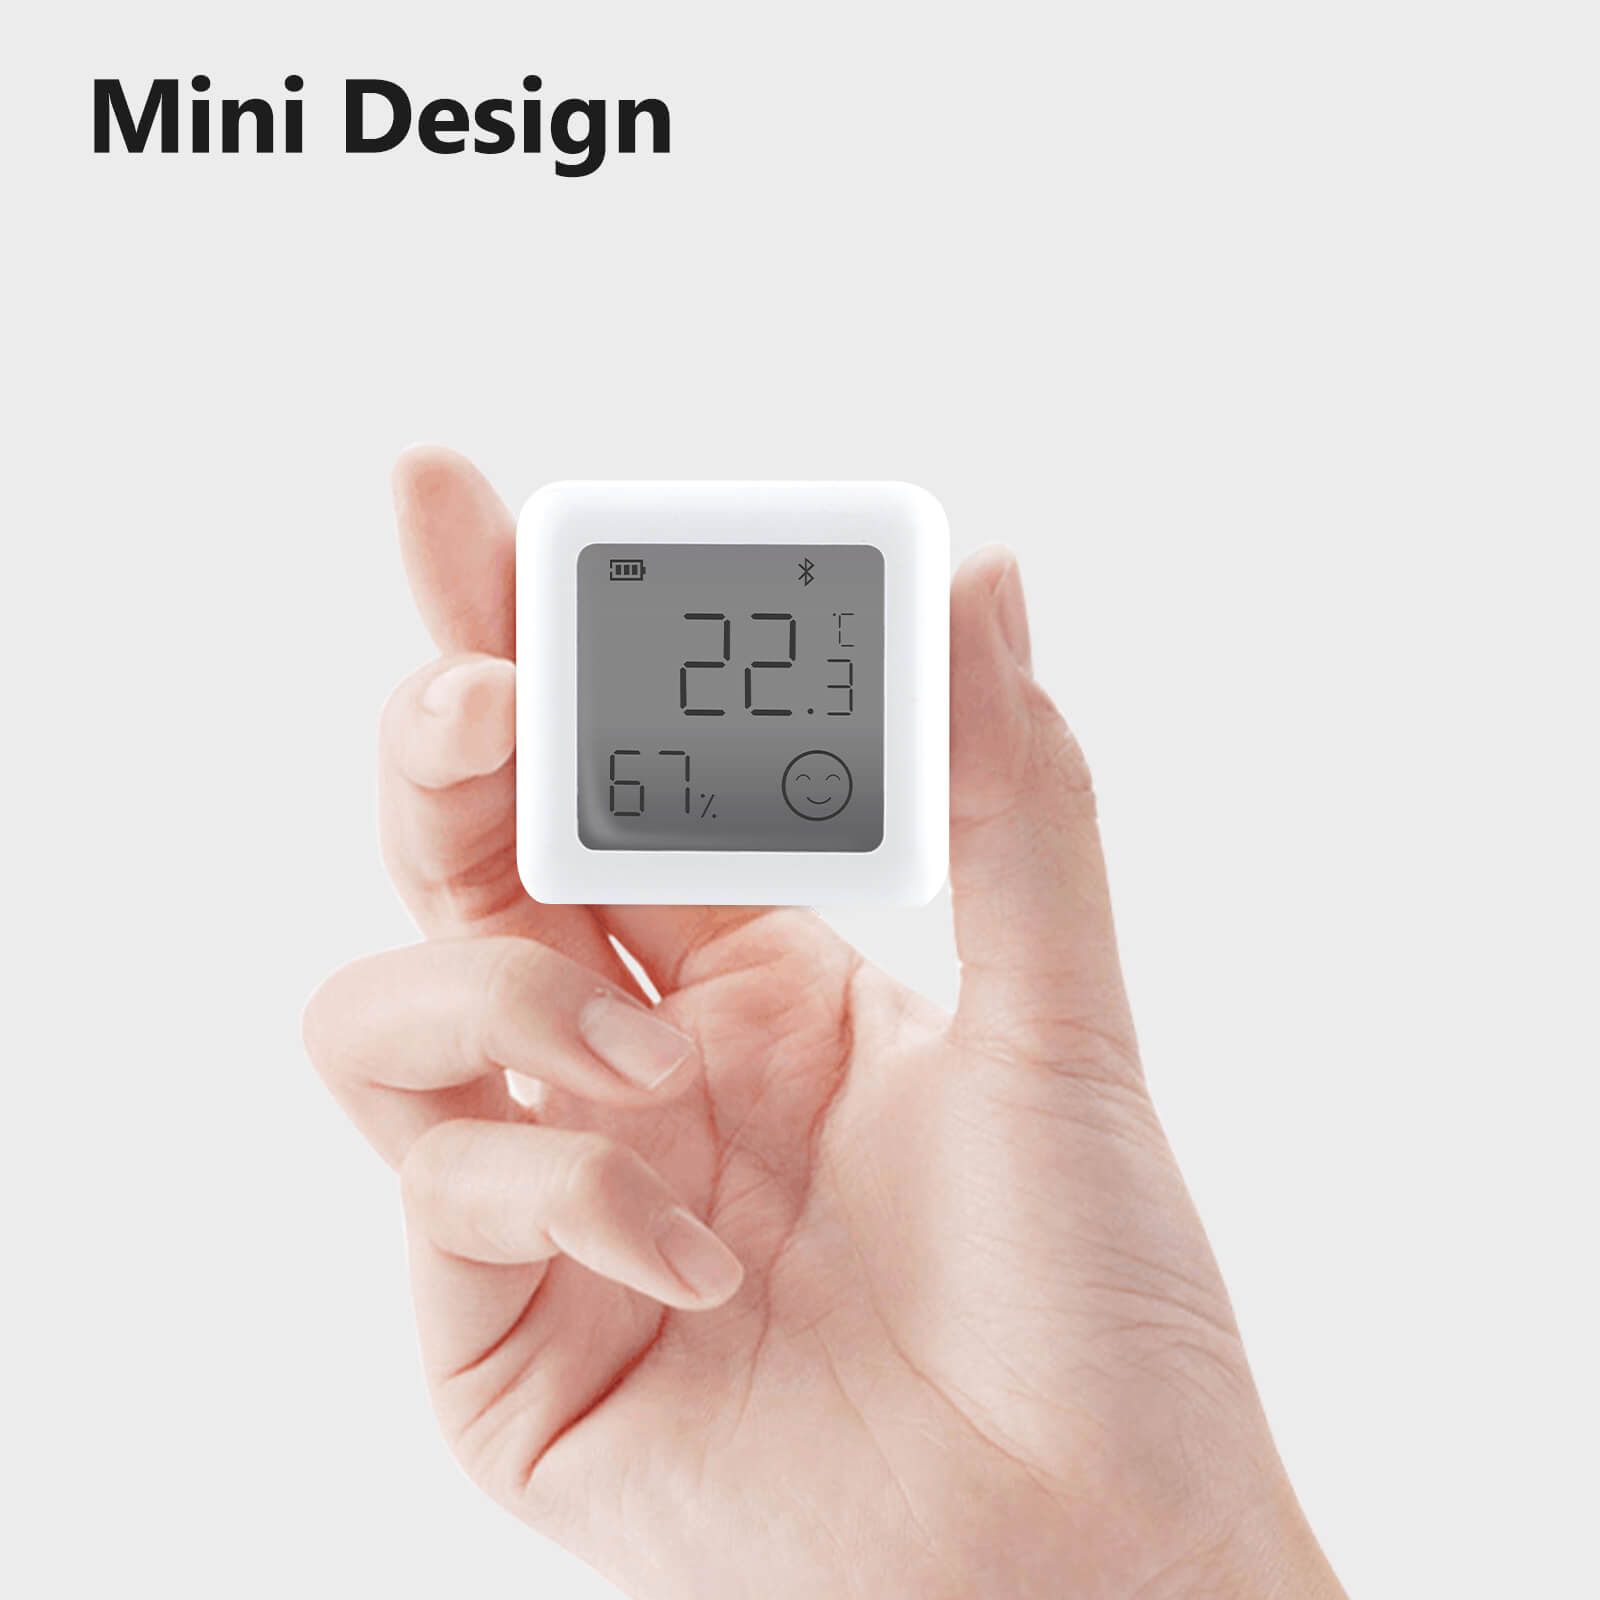 Mini Design